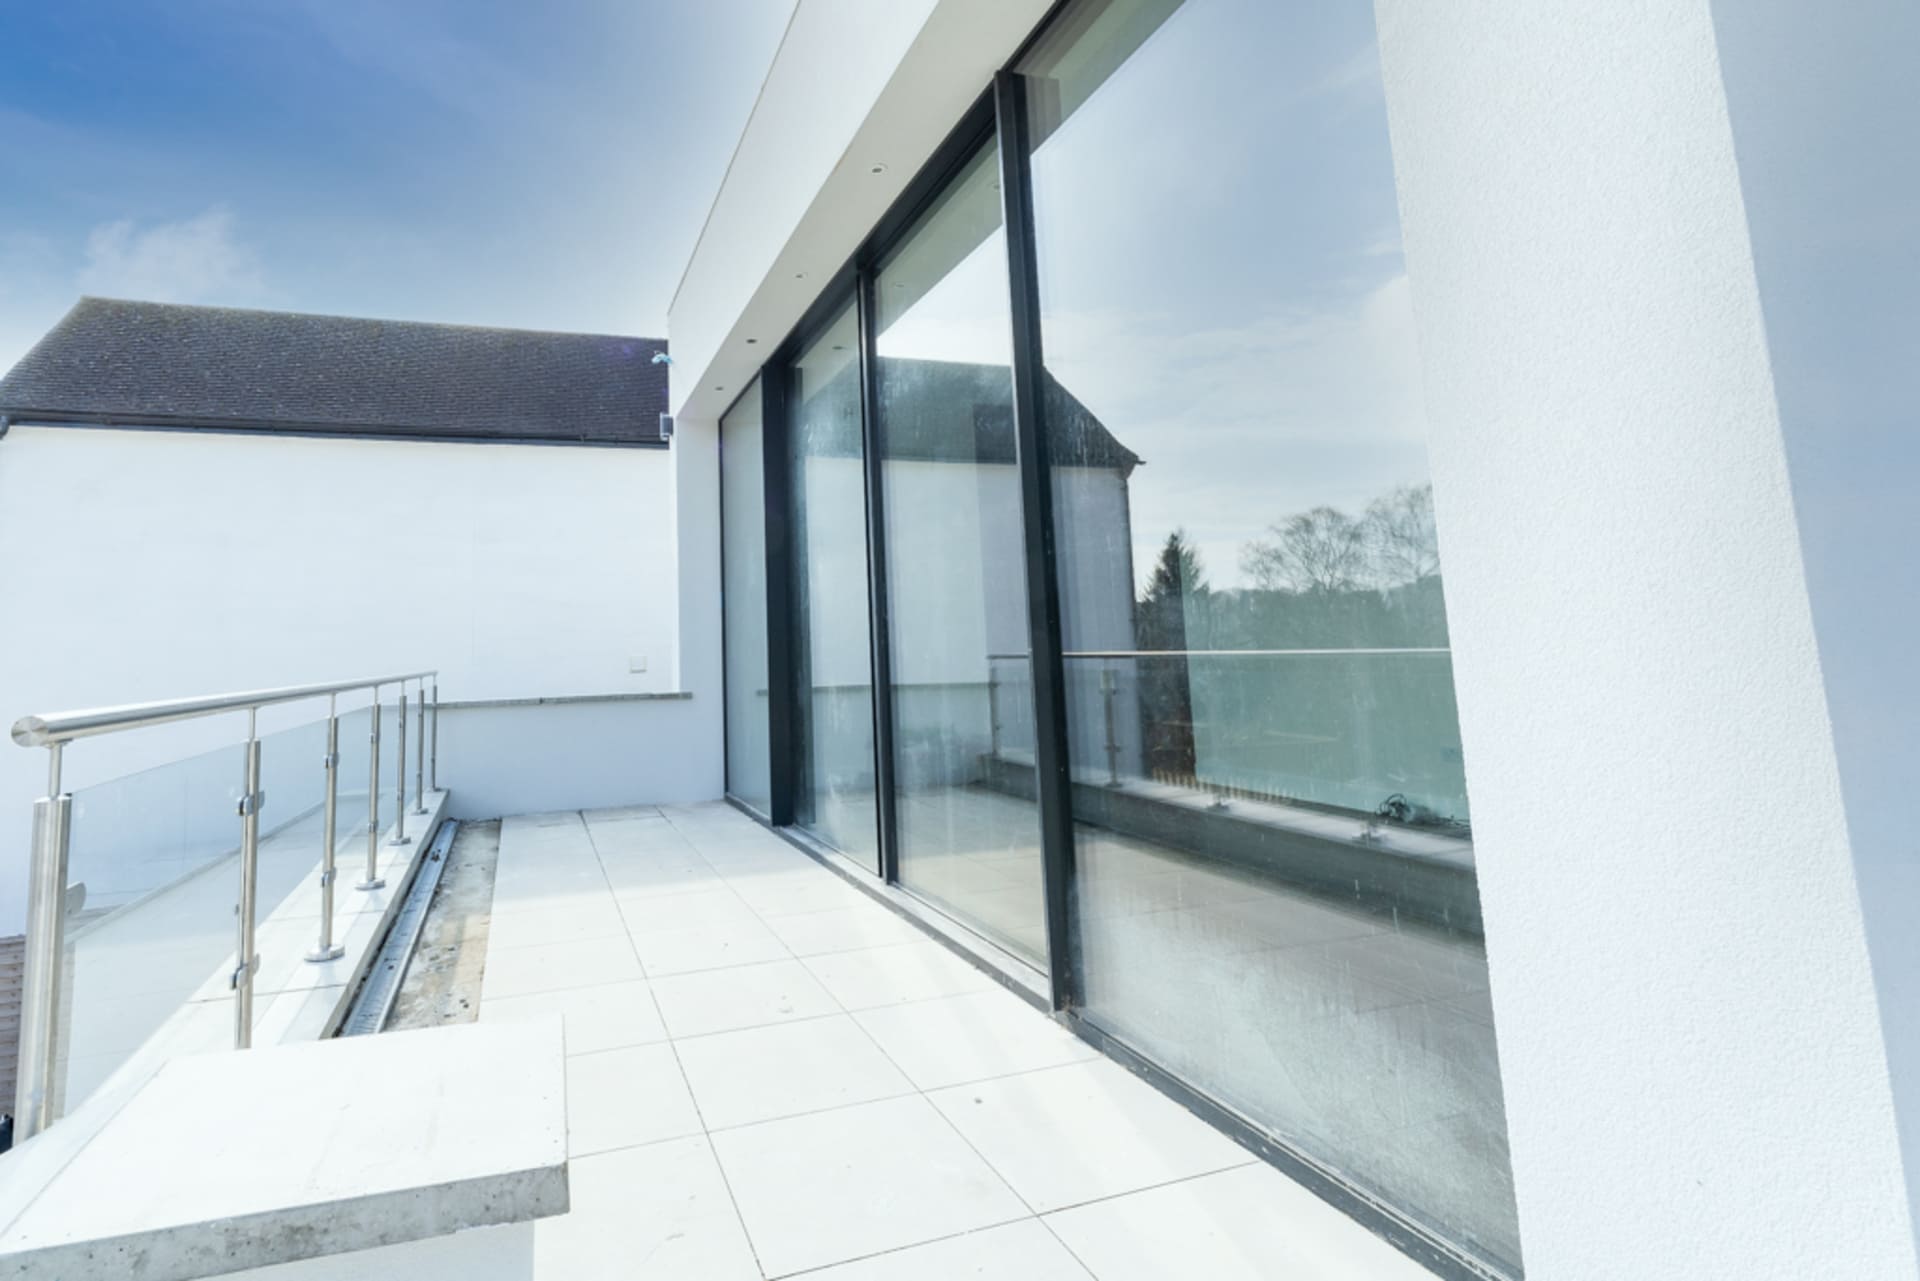 balcony aluminium sliding doors in a newly built house